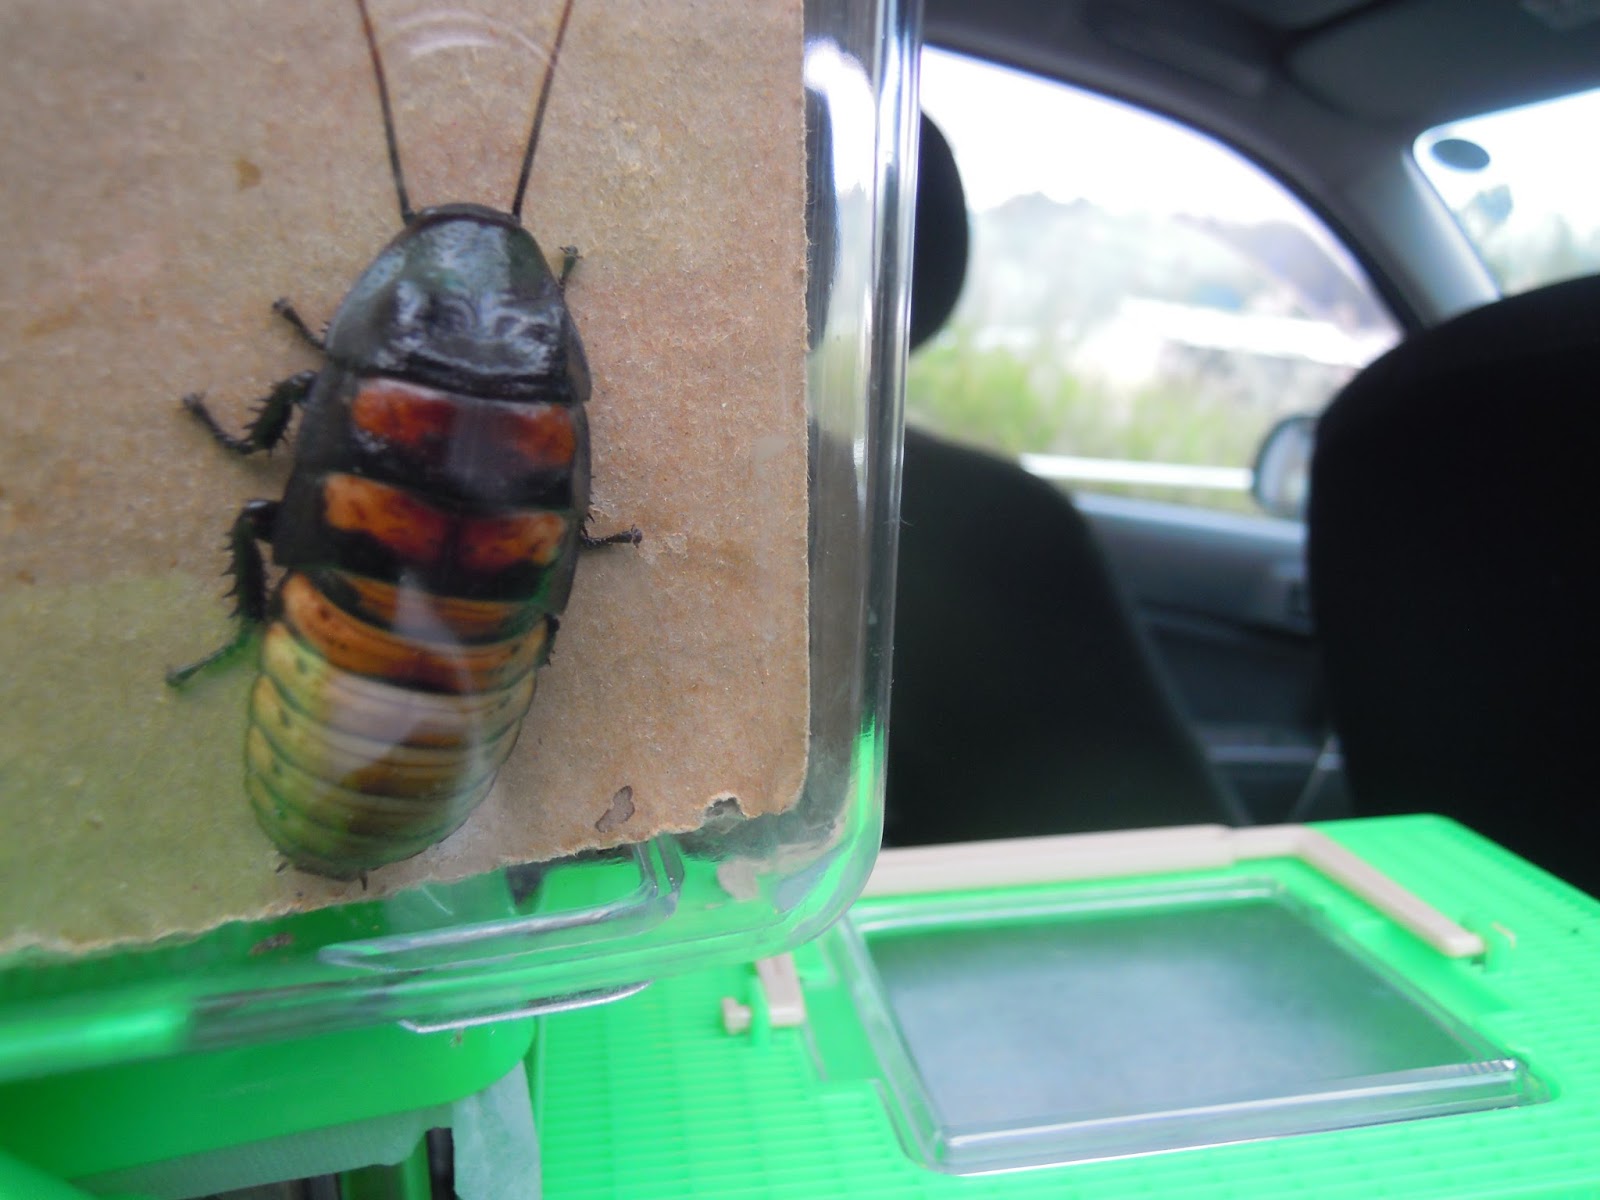 ほっと行動学 以前 大学祭で 世界の生きたゴキブリ展をやり遂げたゼミの学生がいた 私は彼のアパートから車に乗せてでかいでかいゴキブリ を大学に運んだ おい マジかよ